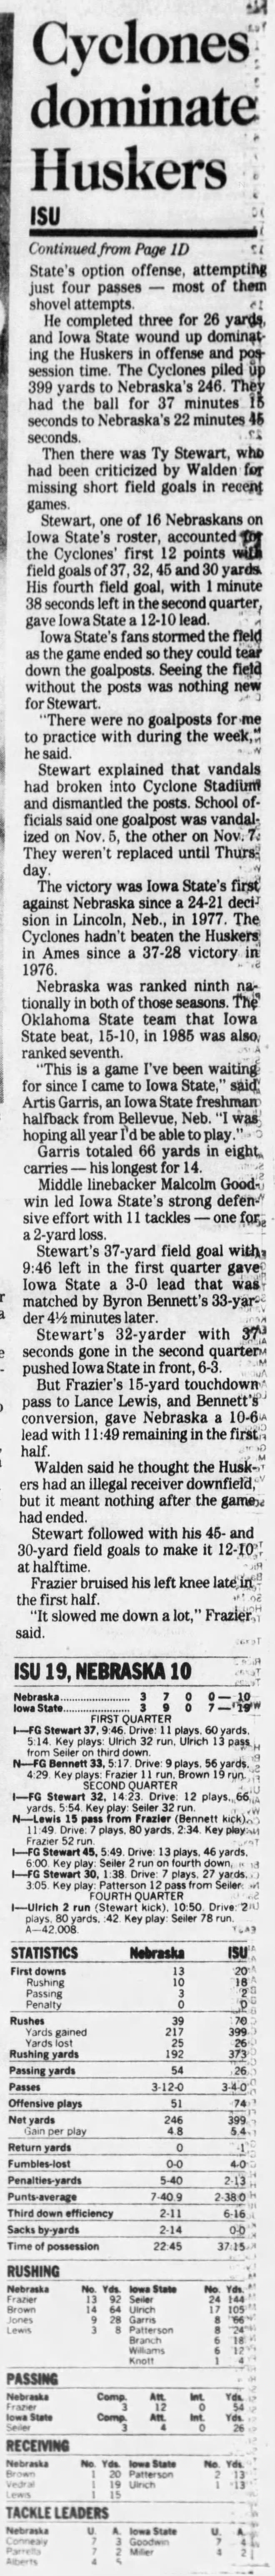 1992 Nebraska-Iowa State football, DMR2